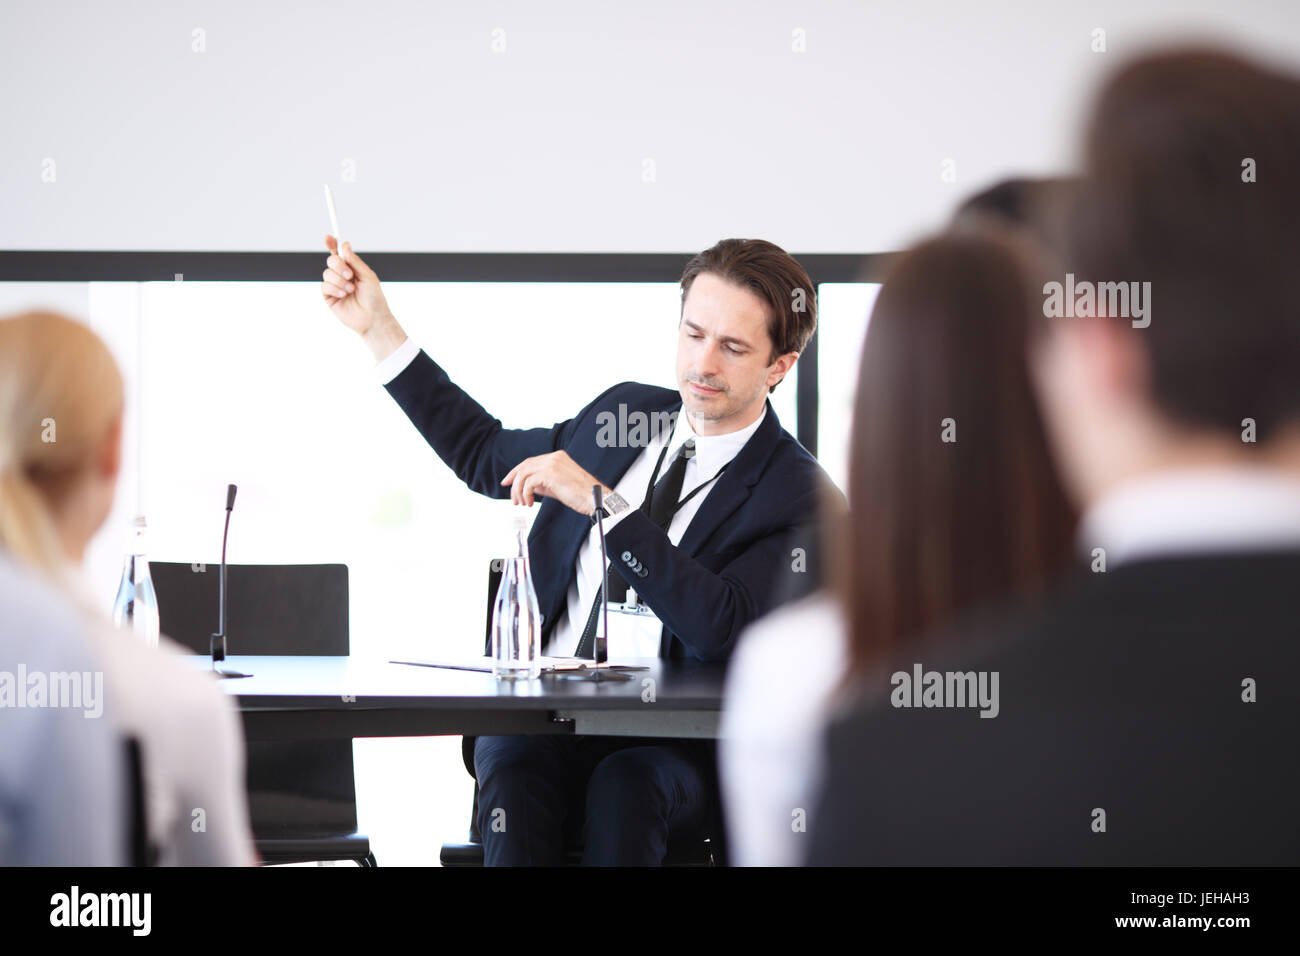 Sprechergruppe auf Business Meeting am Tisch mit Mikrofonen Stockfoto